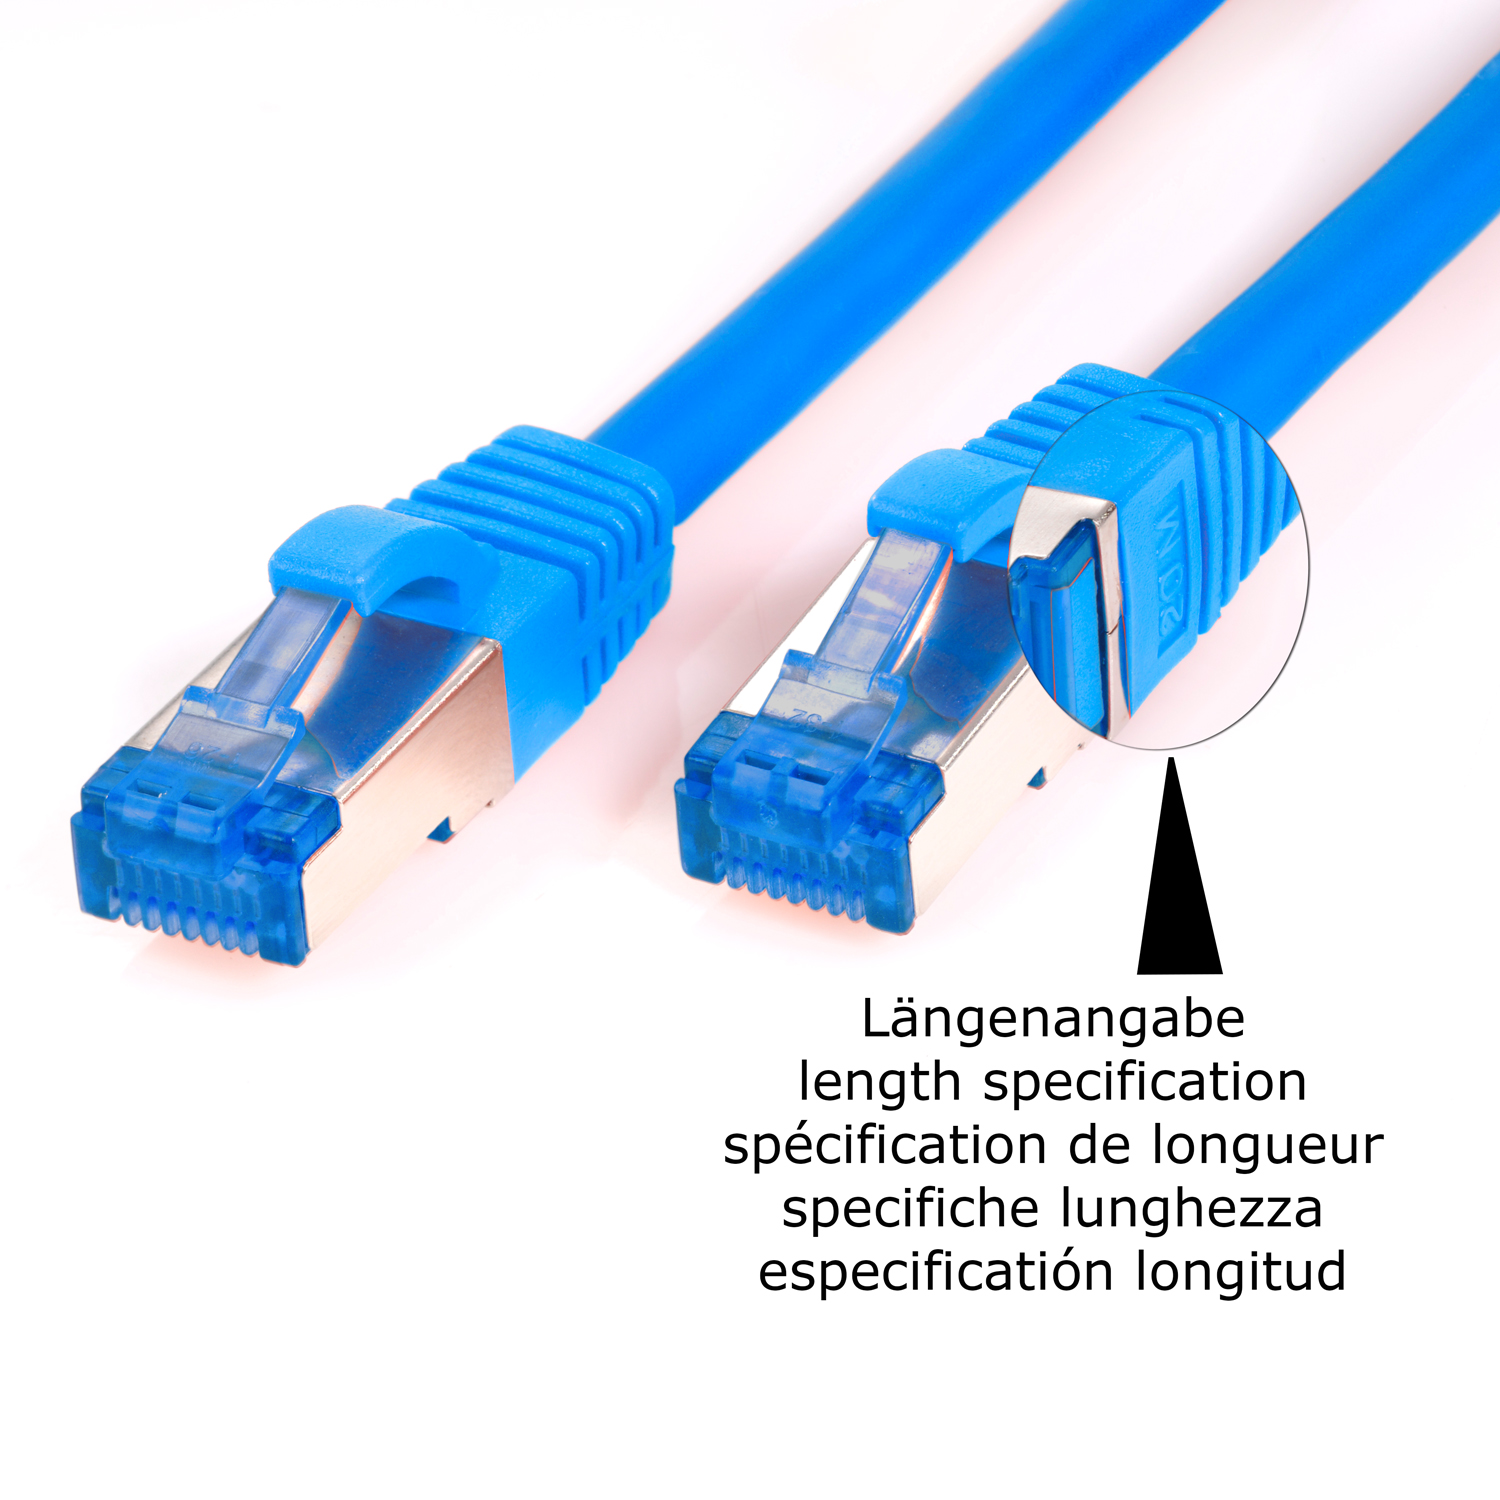 S/FTP / TPFNET 2 m Netzwerkkabel, 5er 10GBit, Pack blau, Patchkabel Netzwerkkabel 2m